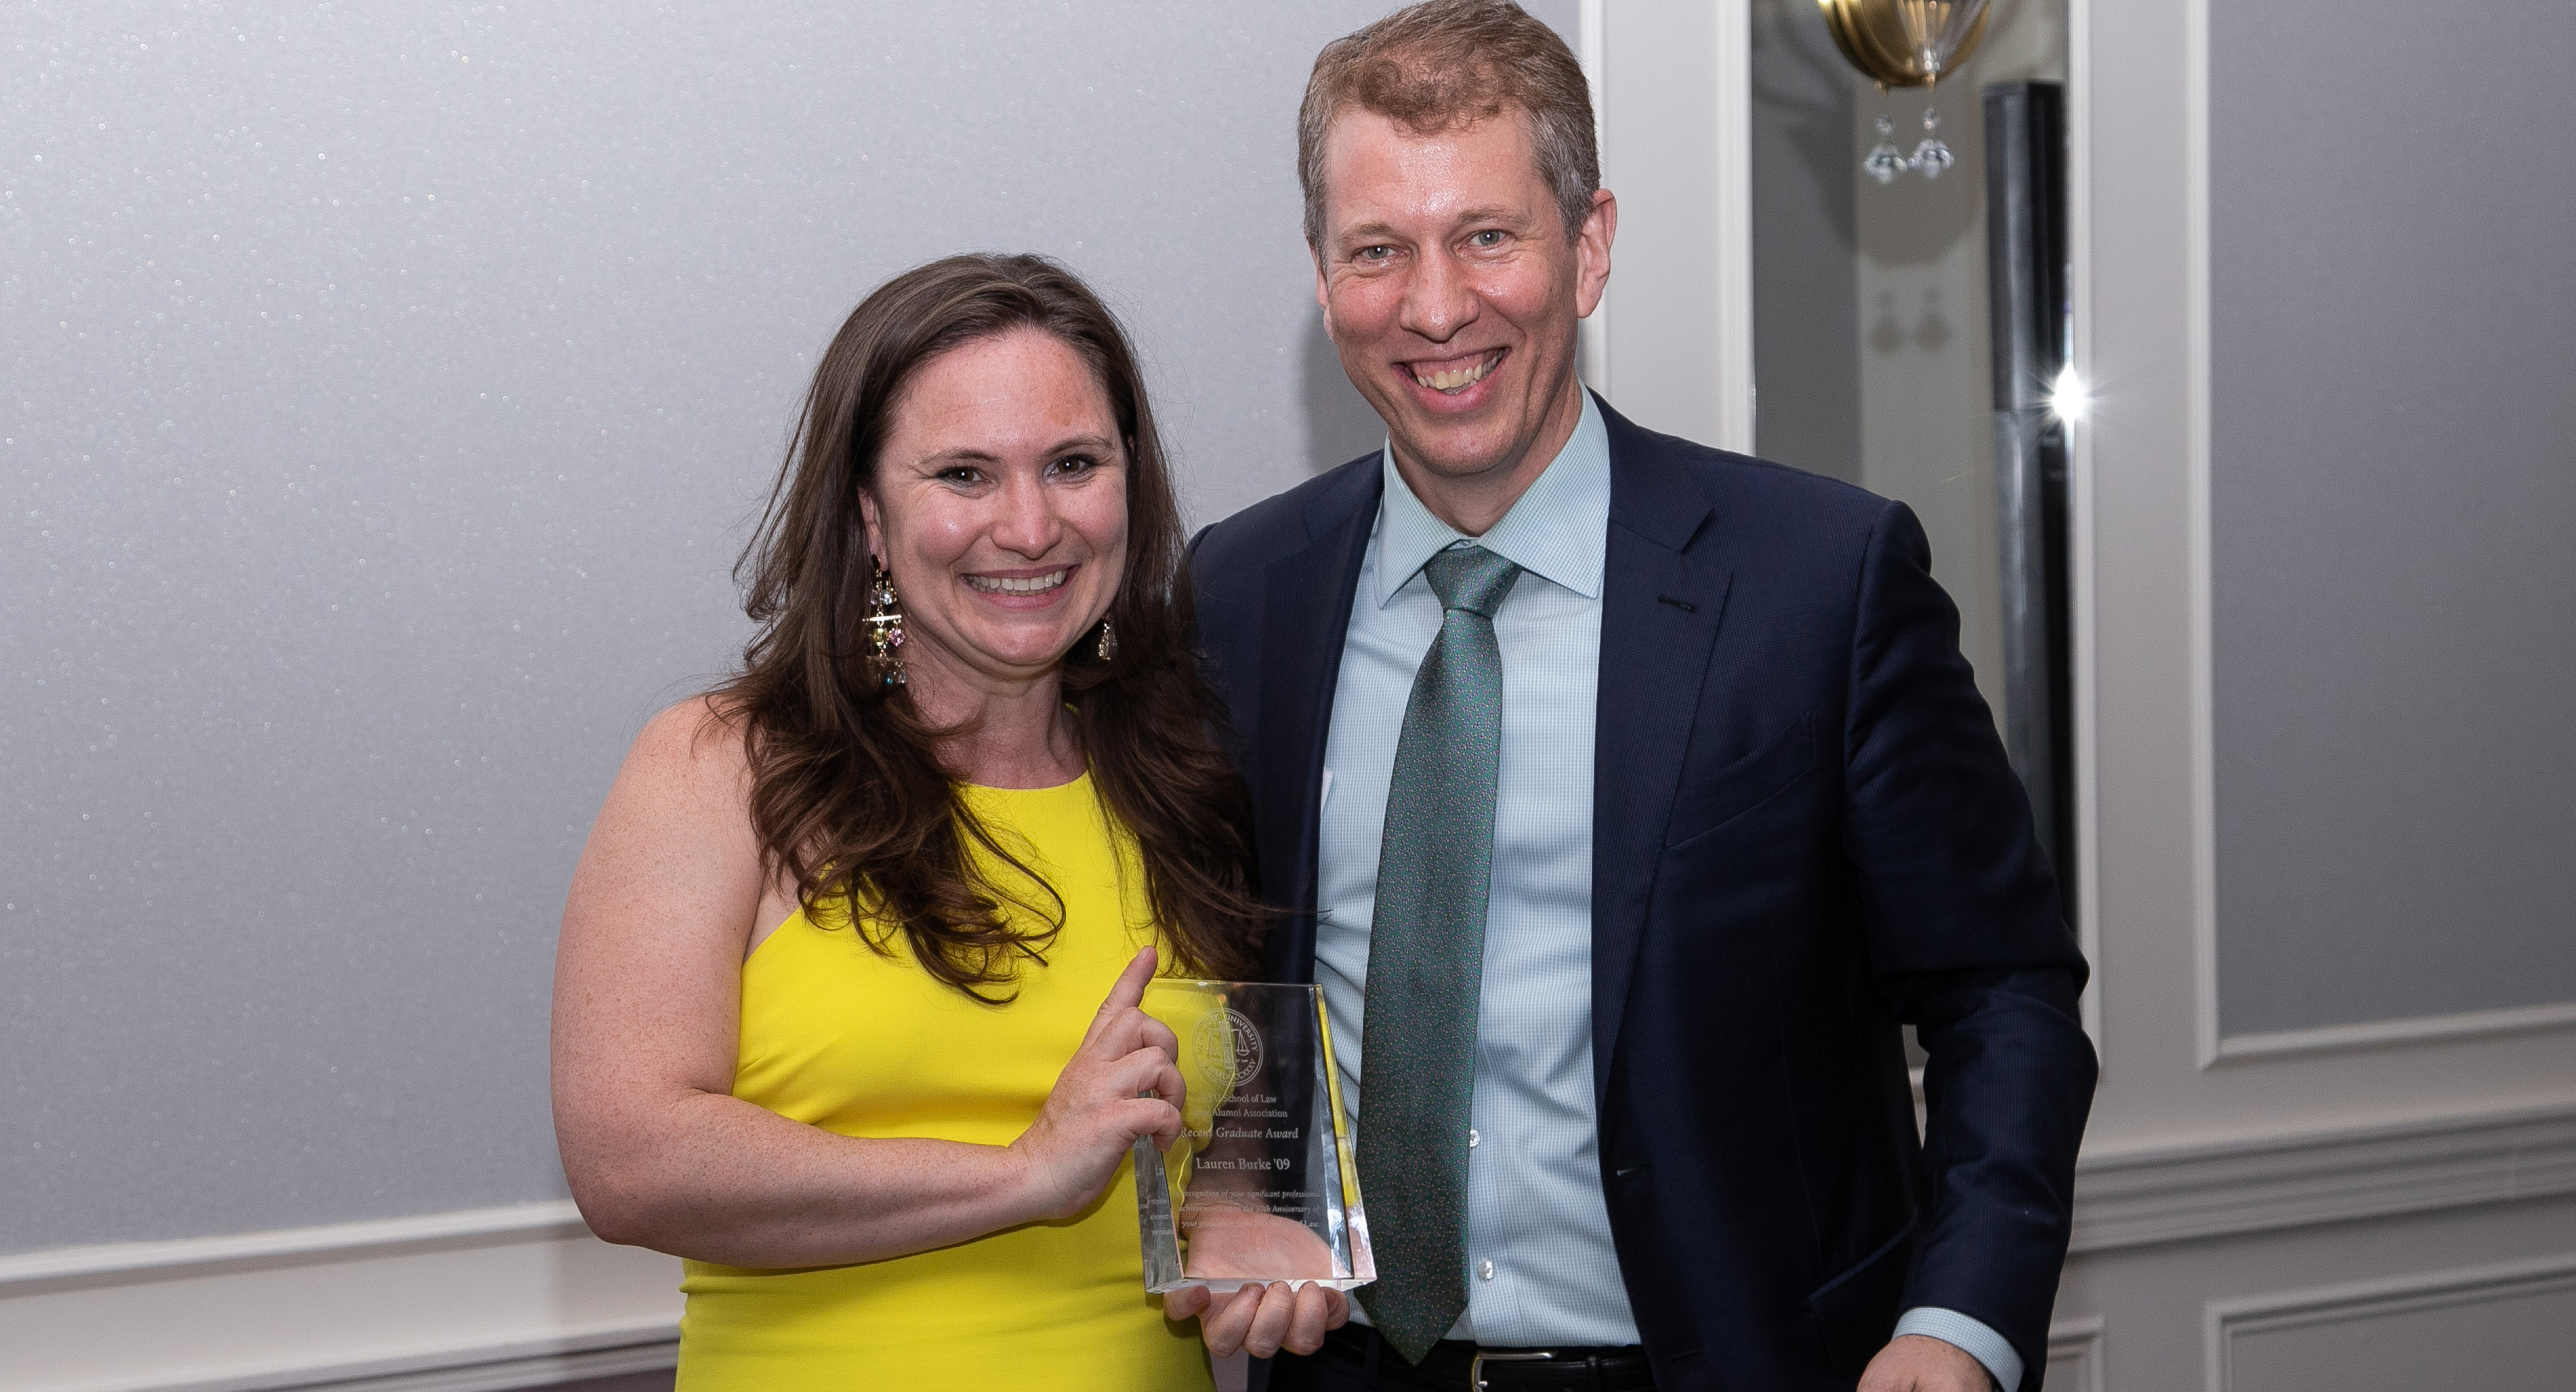 Lauren Burke receiving an award from Dean Trevor Morrison at Reunion 2019